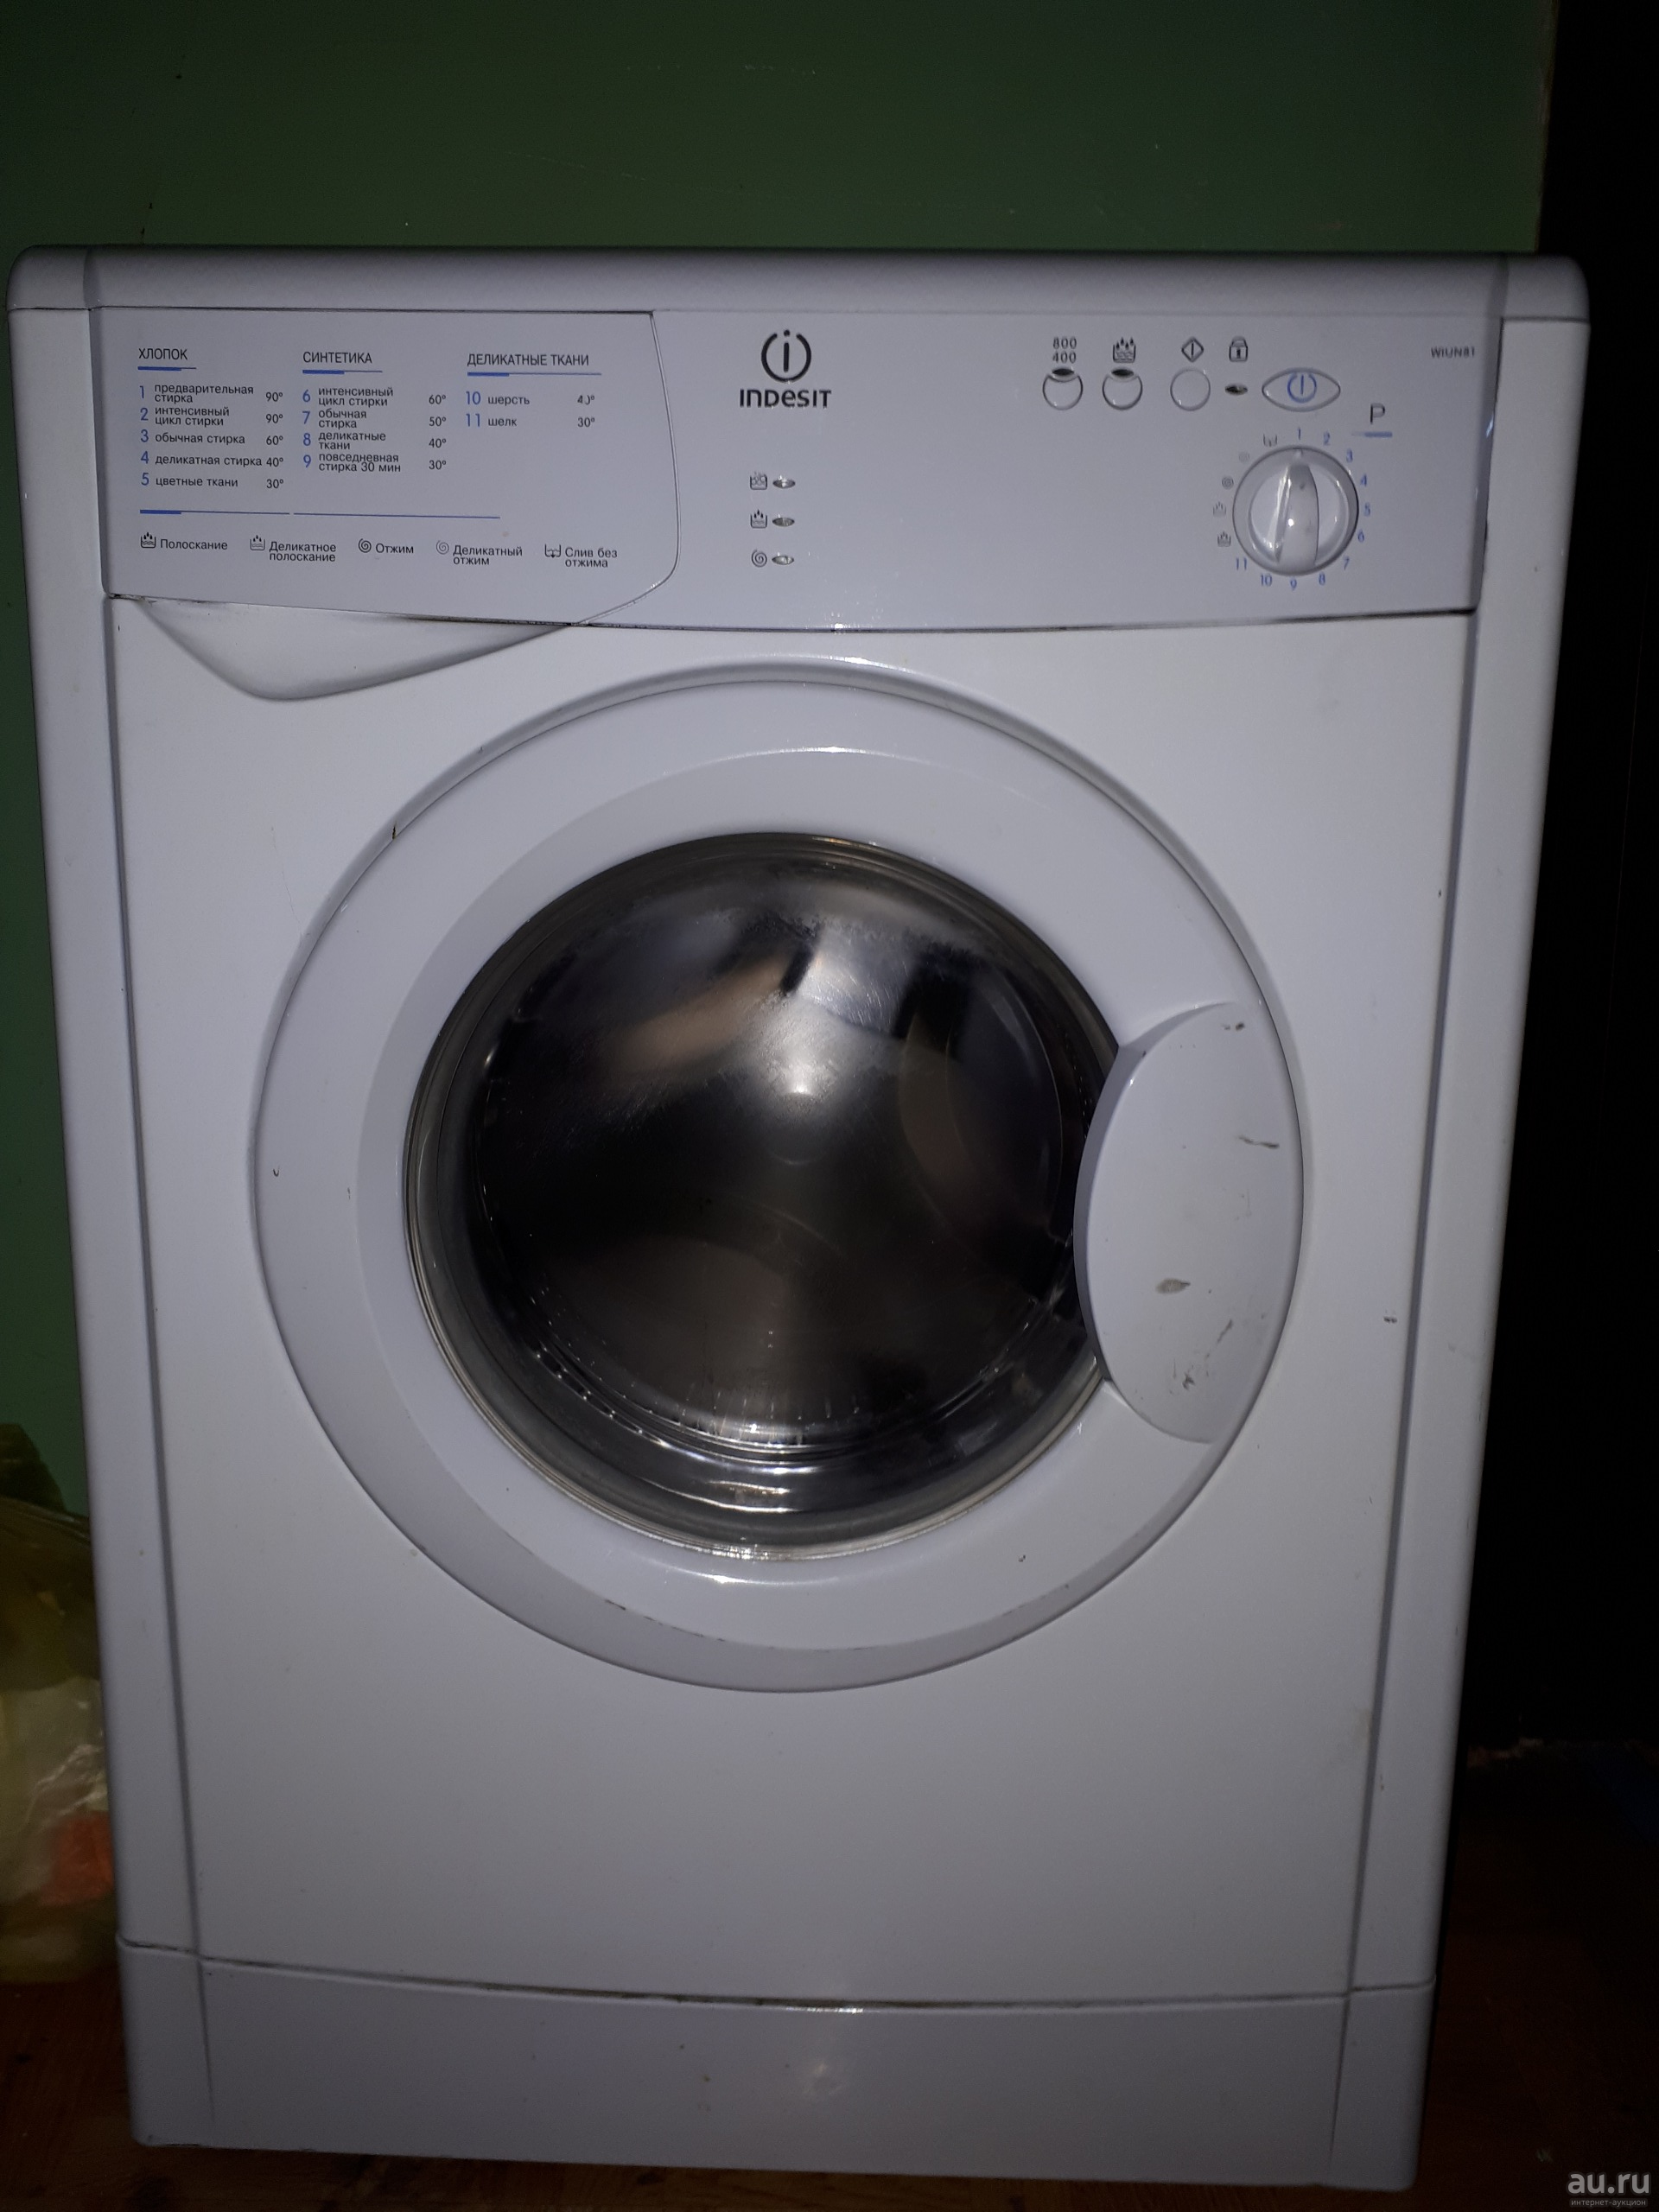 Почему стиральная машина индезит не набирает воду?